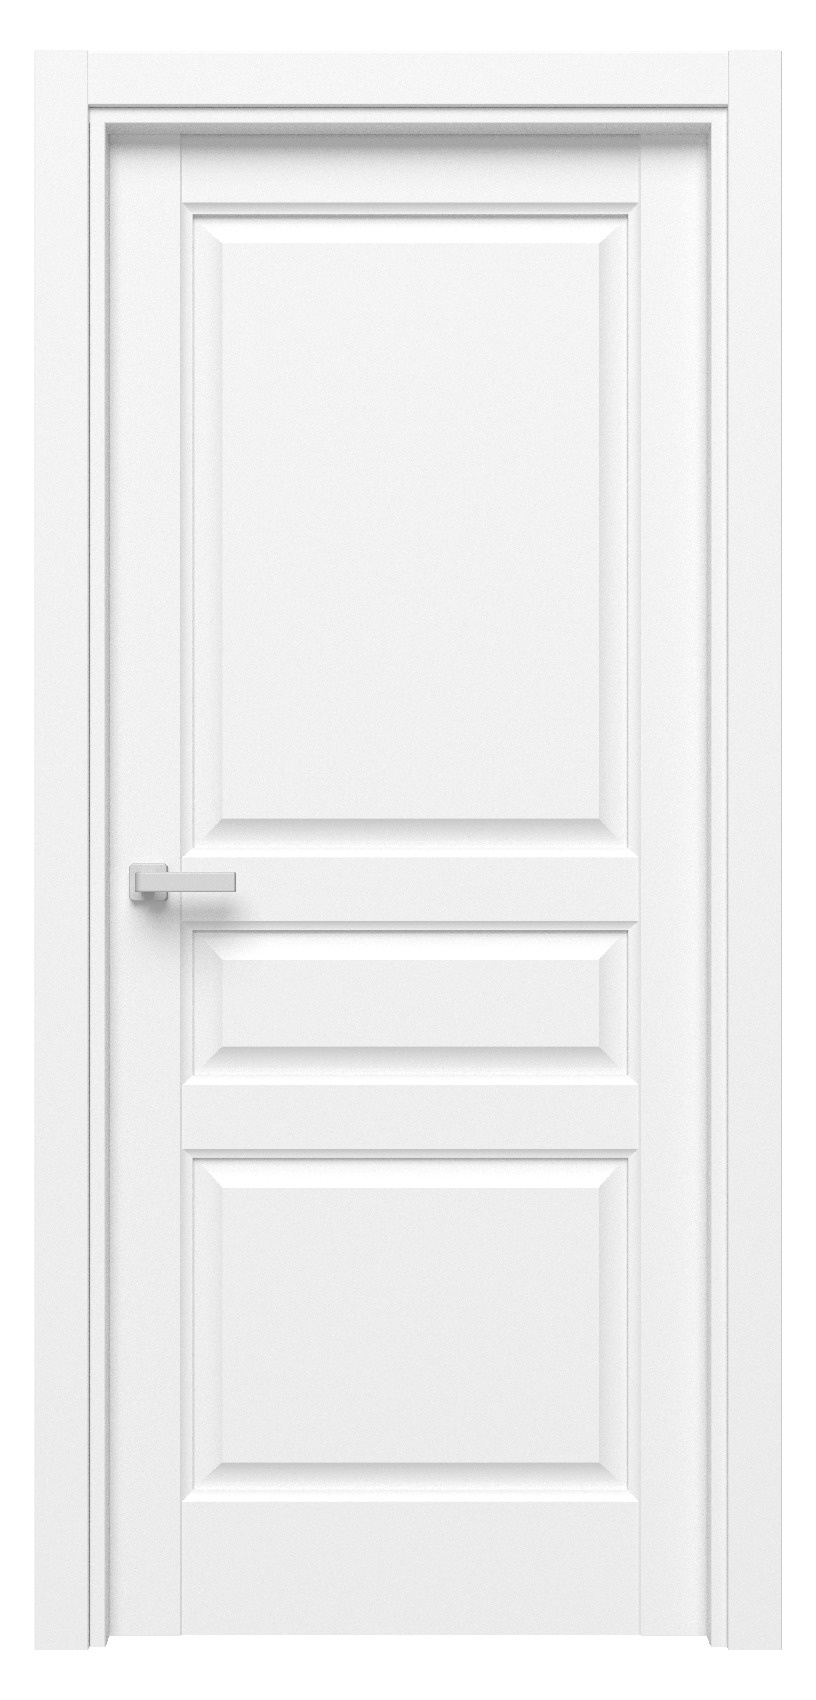 Questdoors Межкомнатная дверь QD3, арт. 17516 - фото №1